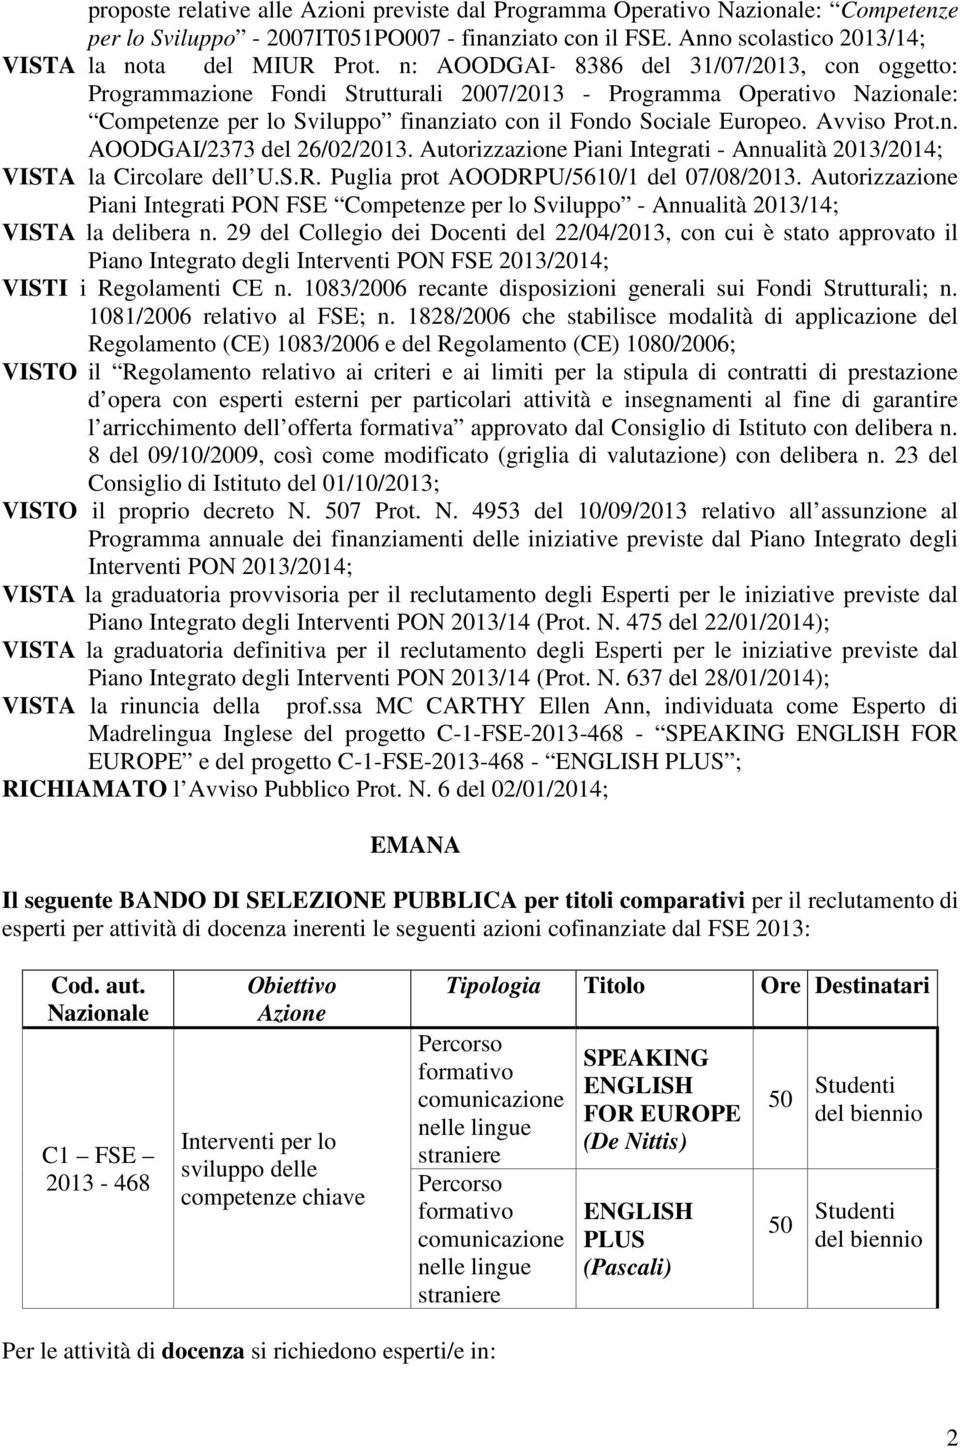 Avviso Prot.n. AOODGAI/2373 del 26/02/2013. Autorizzazione Piani Integrati - Annualità 2013/2014; VISTA la Circolare dell U.S.R. Puglia prot AOODRPU/5610/1 del 07/08/2013.